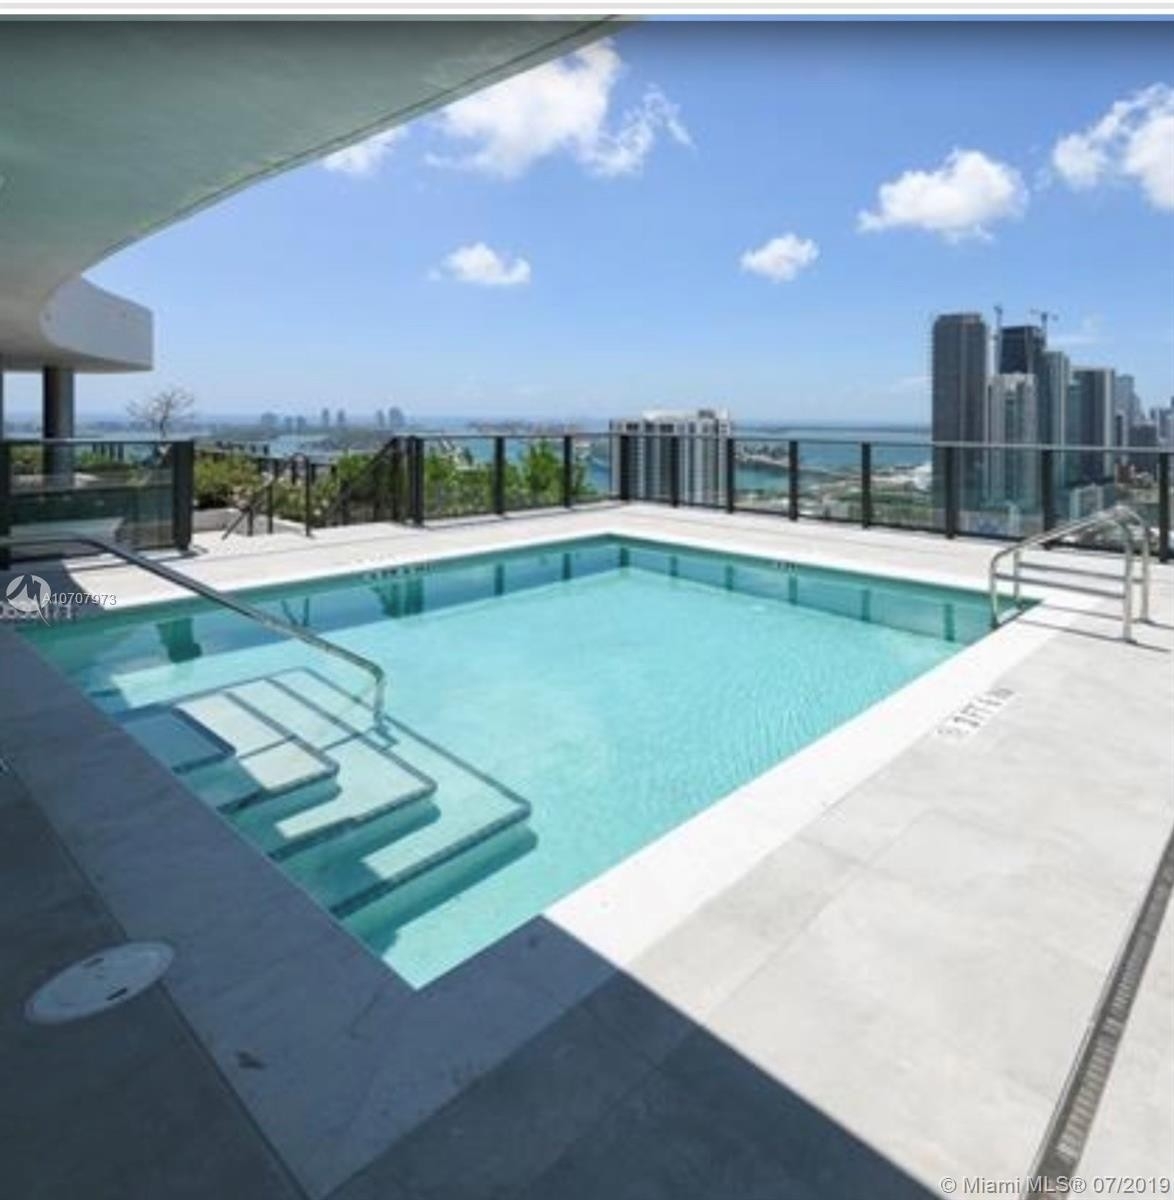 10. Condominiums at 1600 NE 1, 2014 Miami